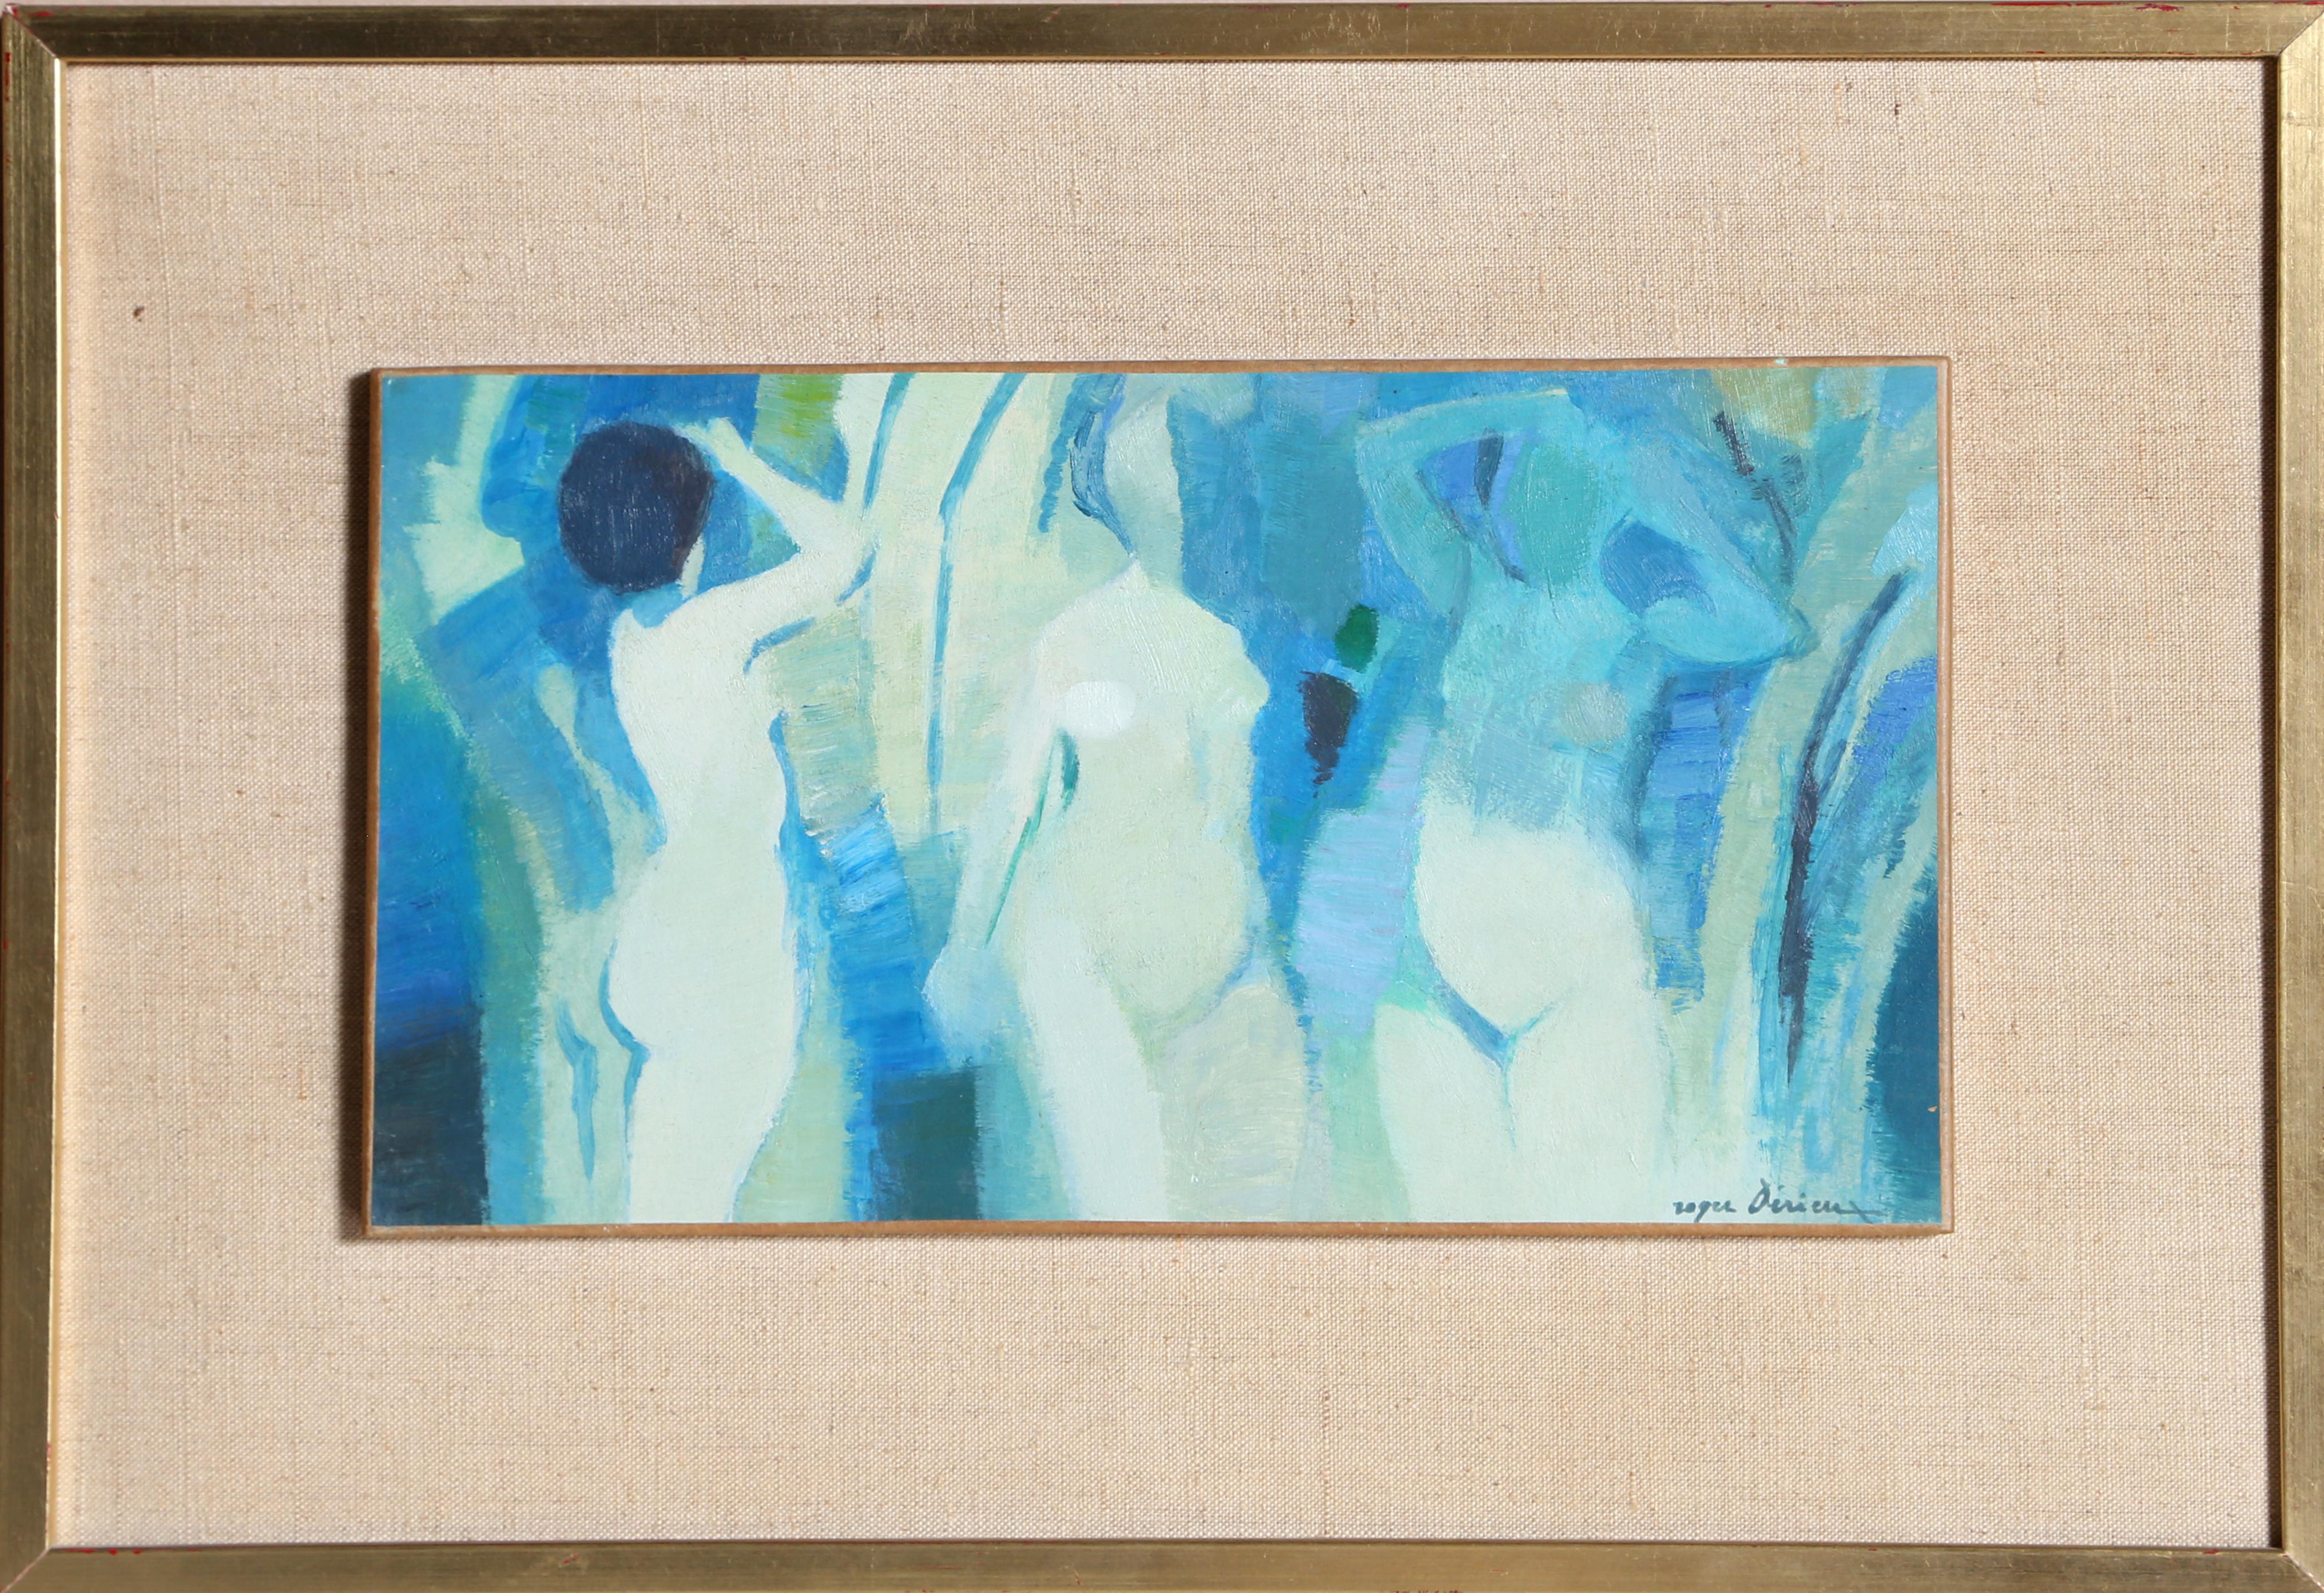 Une peinture moderne de nu par un artiste français,  Roger Derieux, français (1922).  
Trois nus
Date : vers 1960
Huile sur bois, signée à droite.
Taille : 6.5 x 11 in. (16,51 x 27,94 cm)
Taille du cadre : 12 x 16.5 pouces